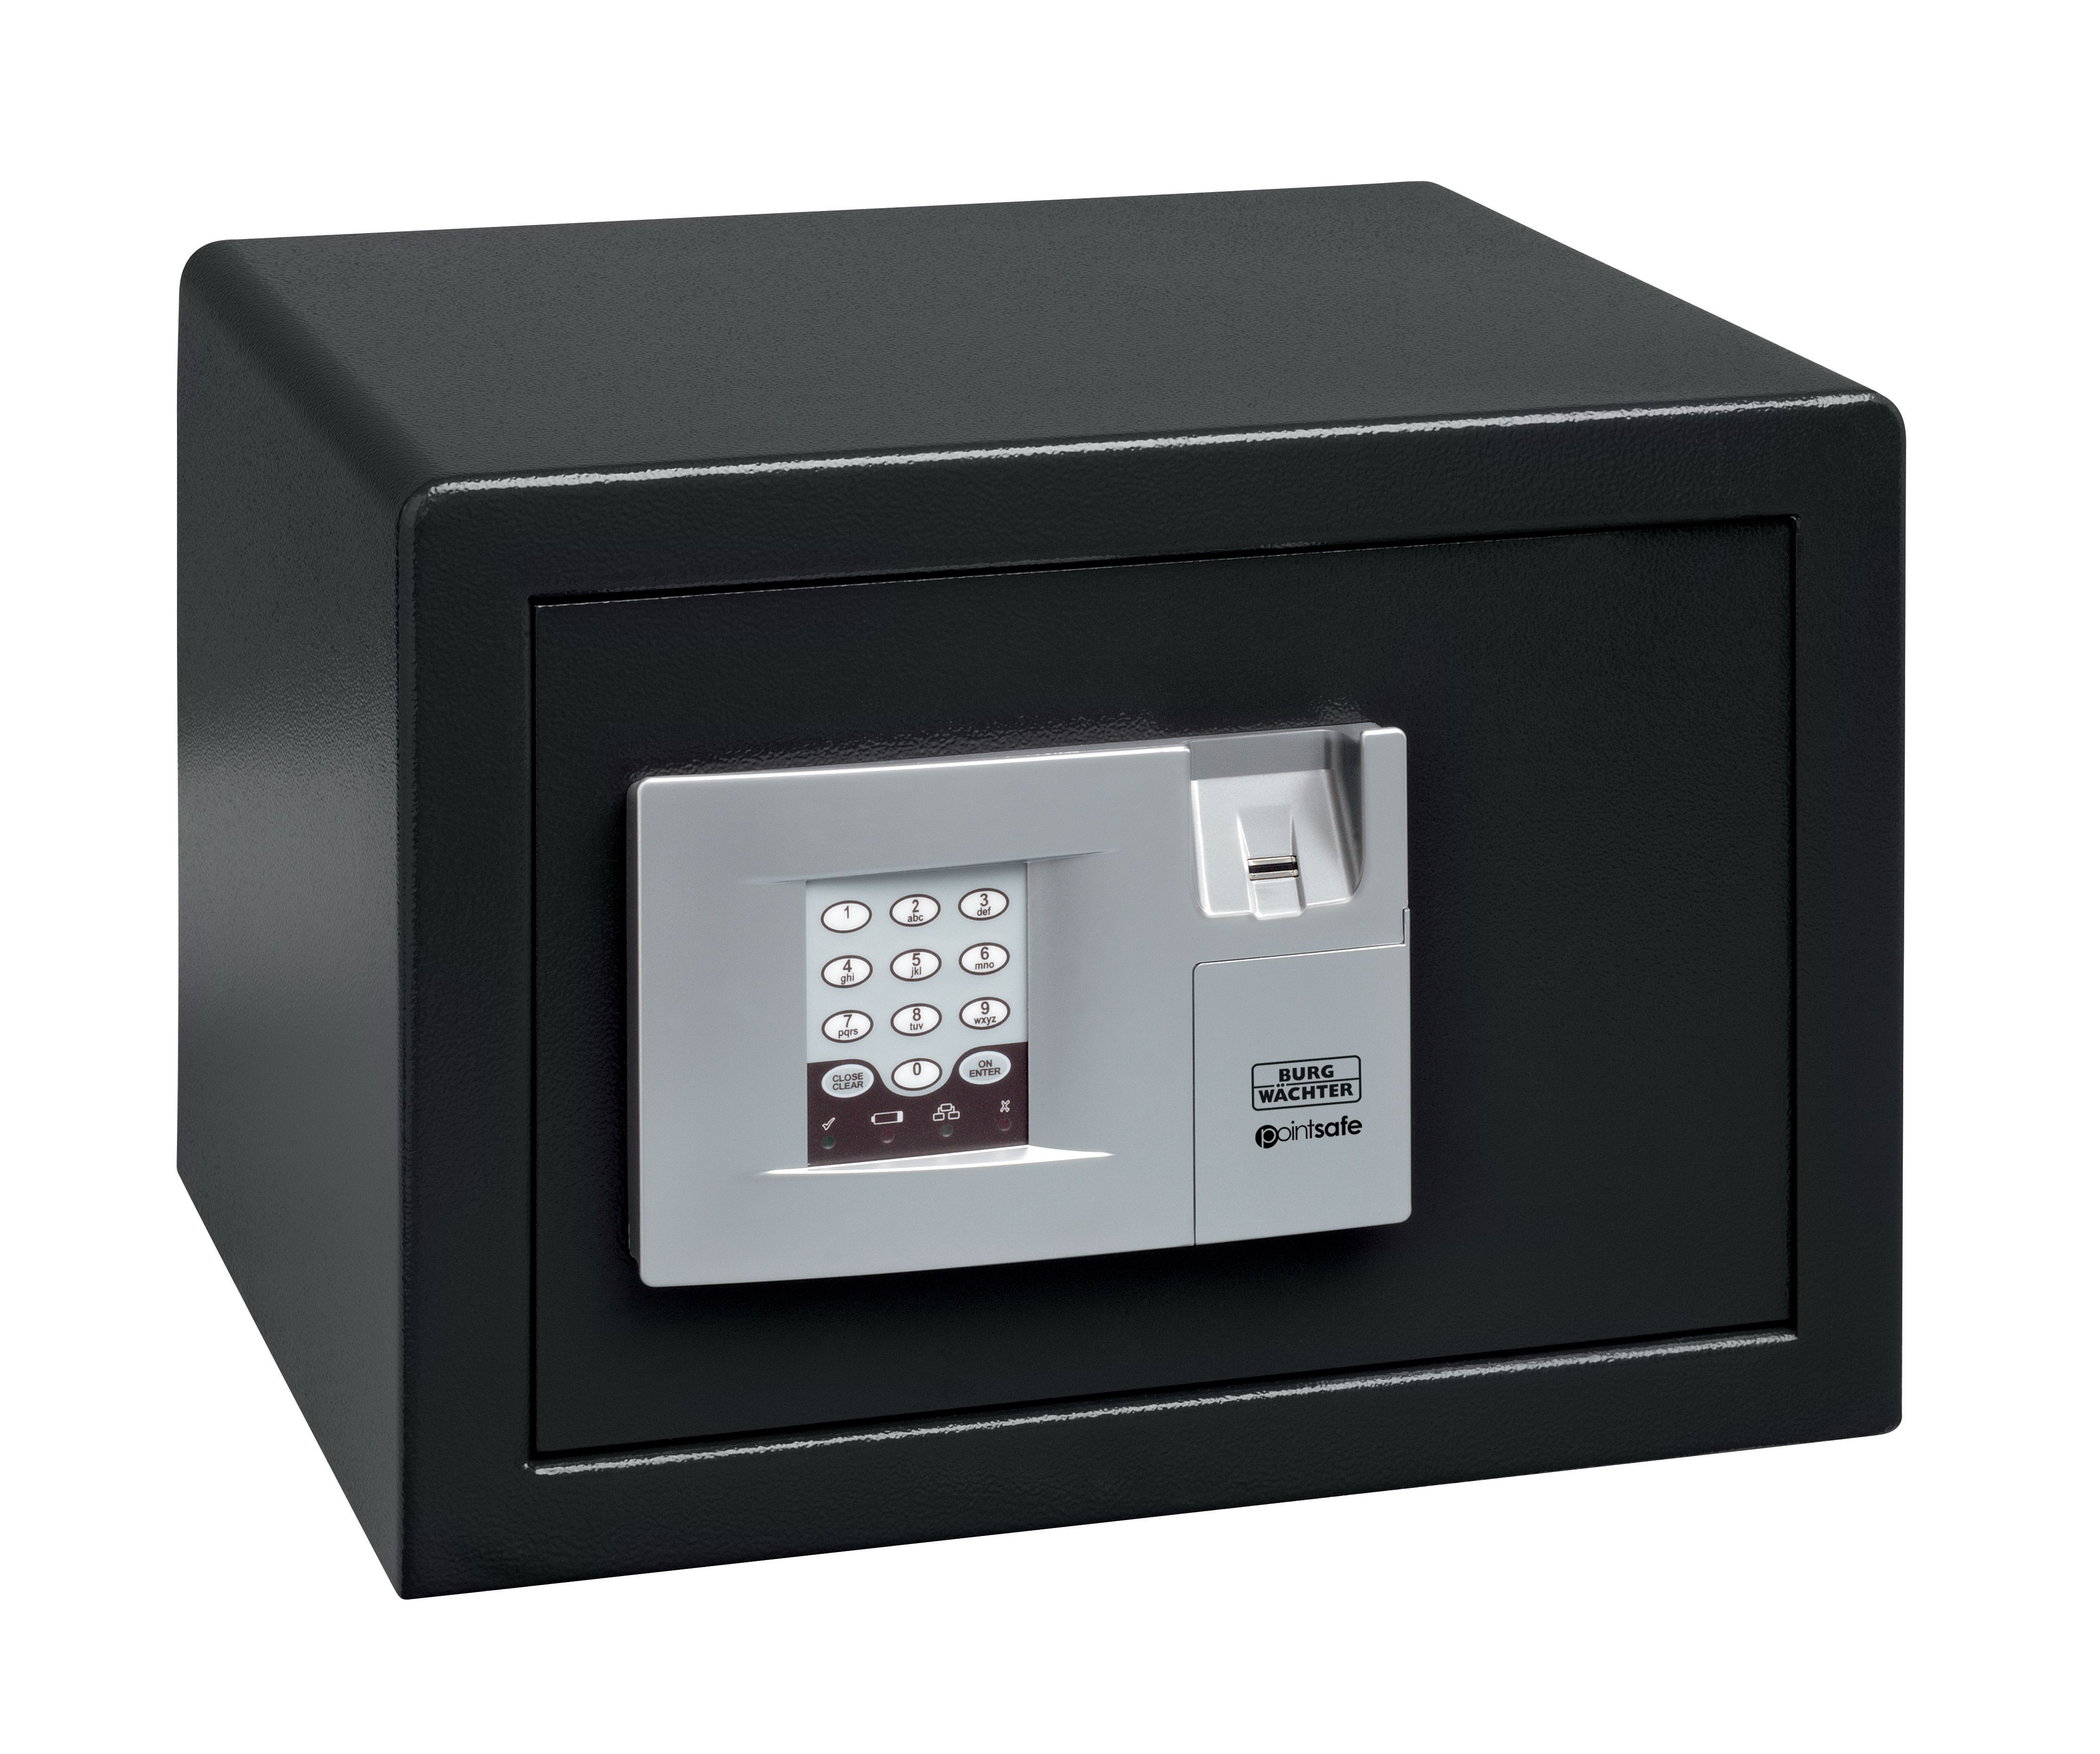 Image of Burg-Wachter Black Pointsafe Electronic Home Safe with Fingerscan - 20.5L